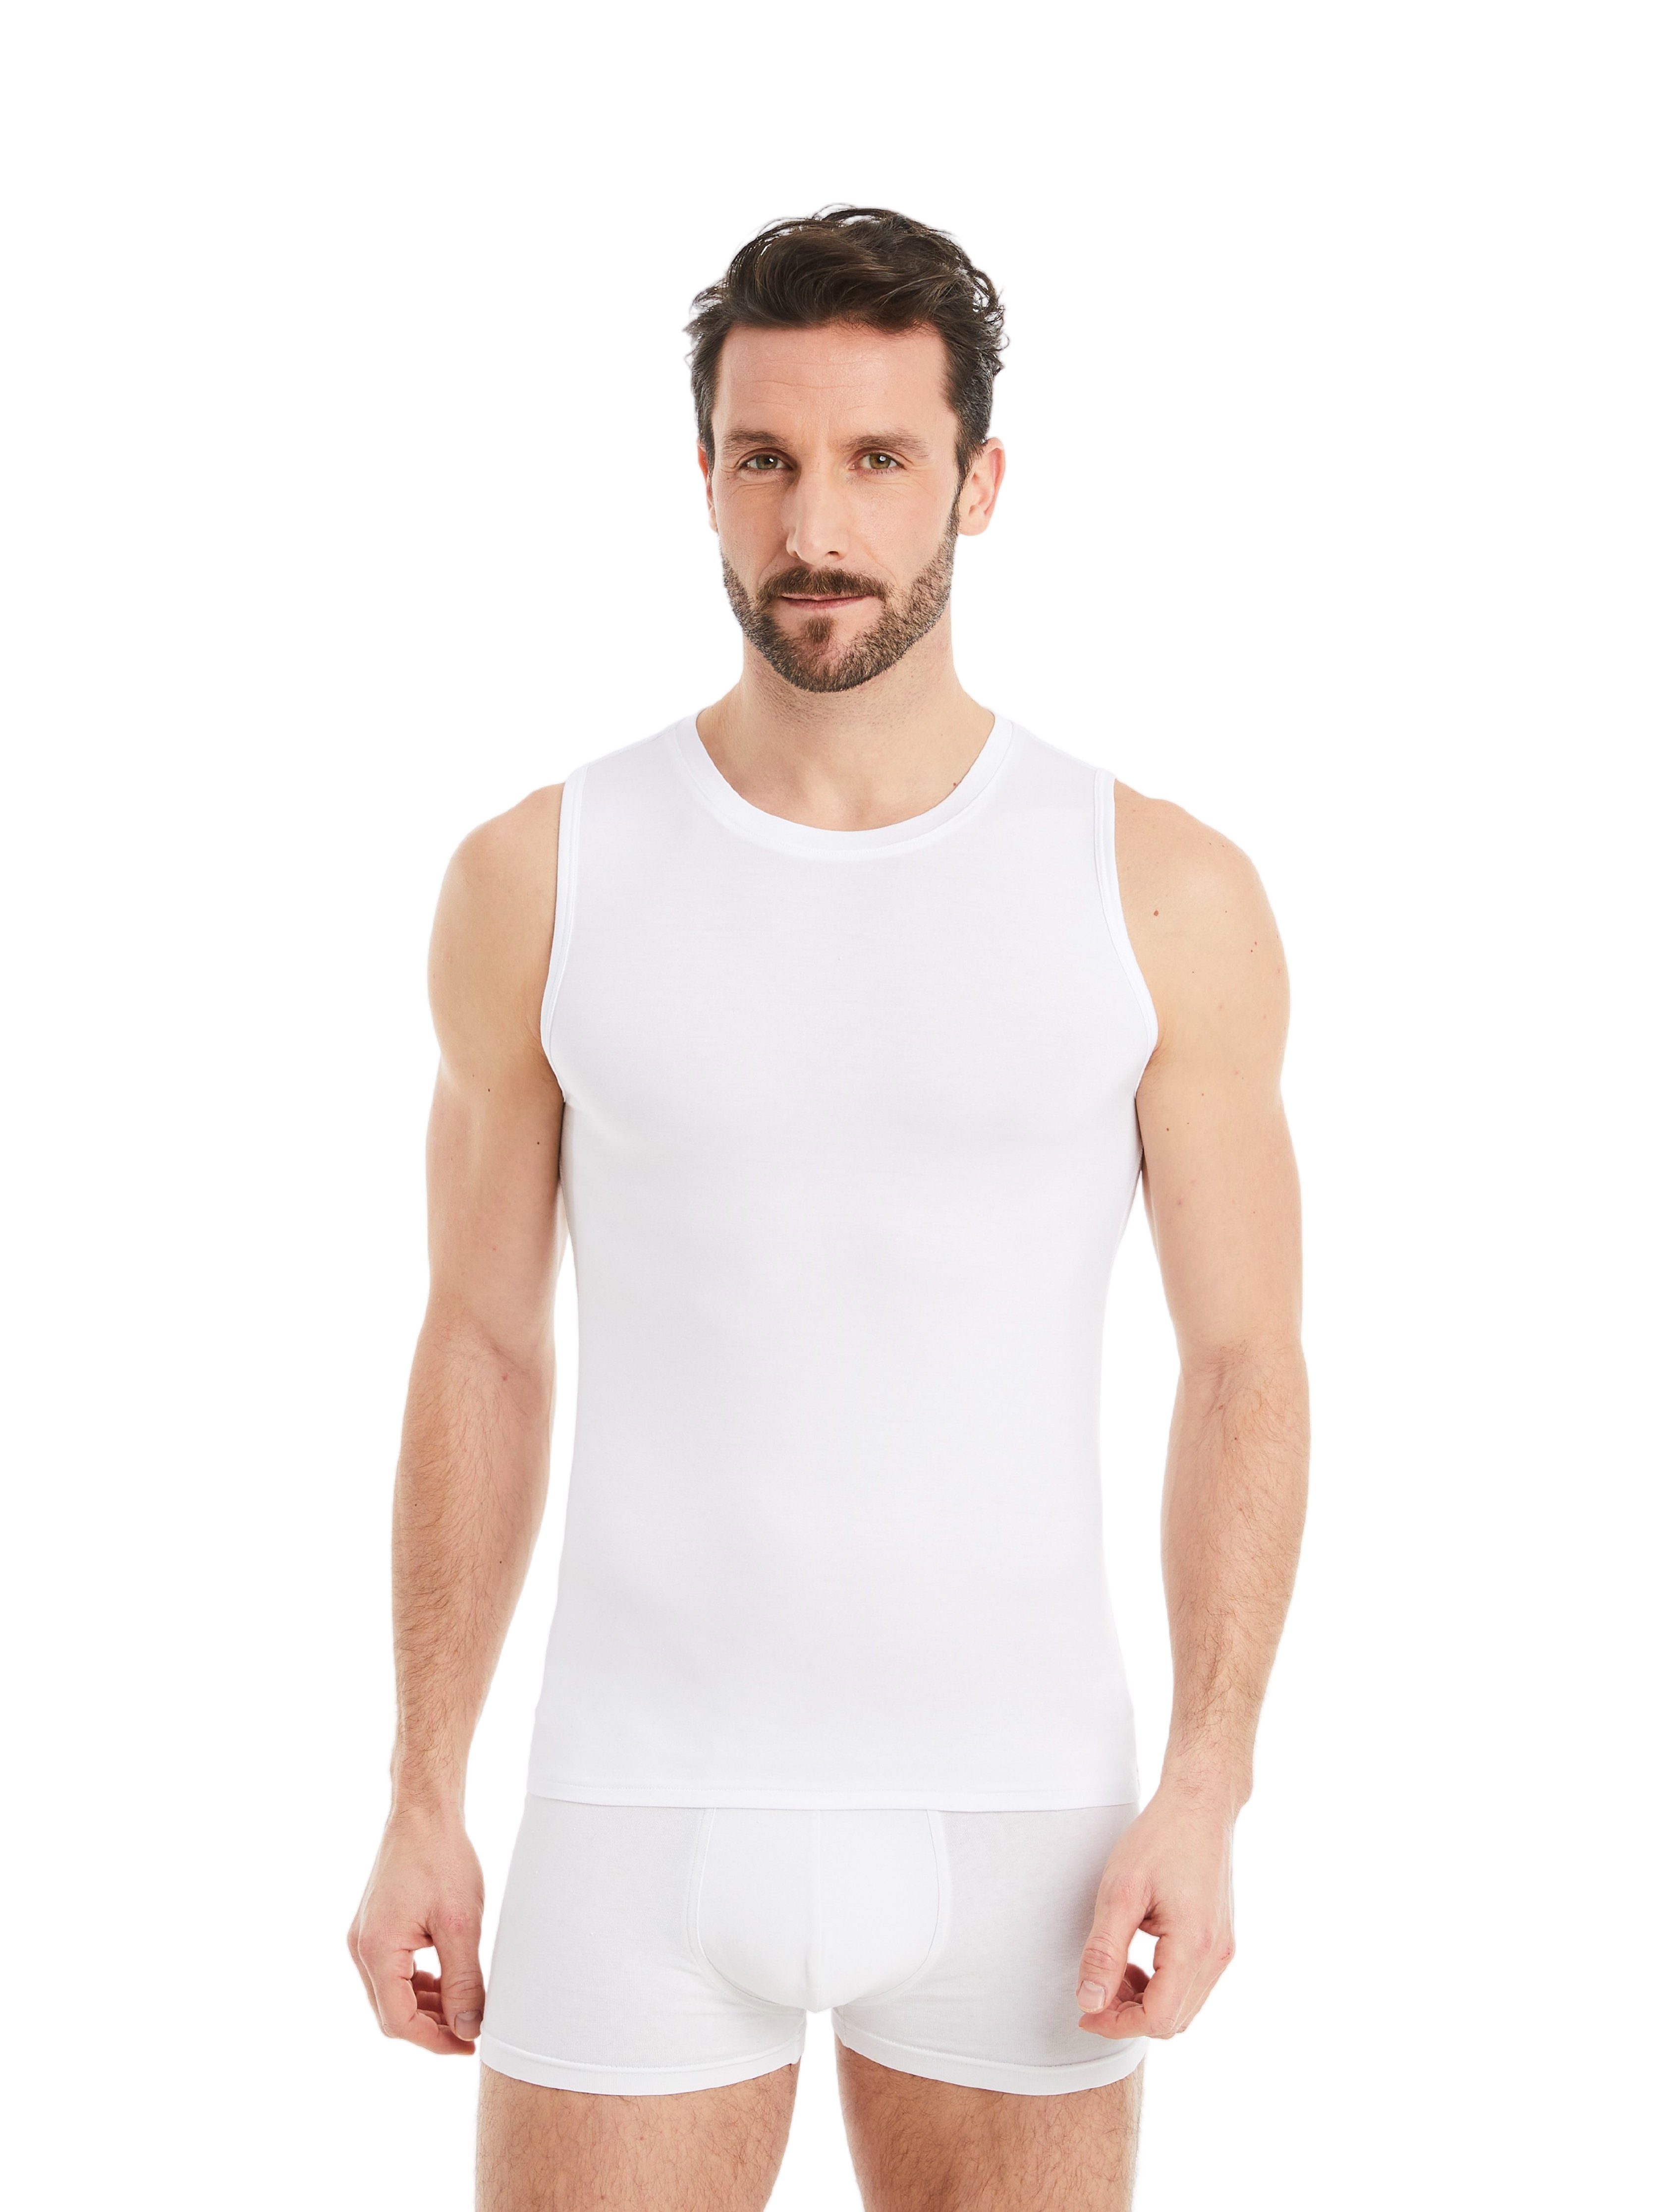 FINN Design Achselhemd Business Unterhemd Ärmellos mit Rundhals Herren feiner Micro-Modal Stoff, maximaler Tragekomfort Weiß